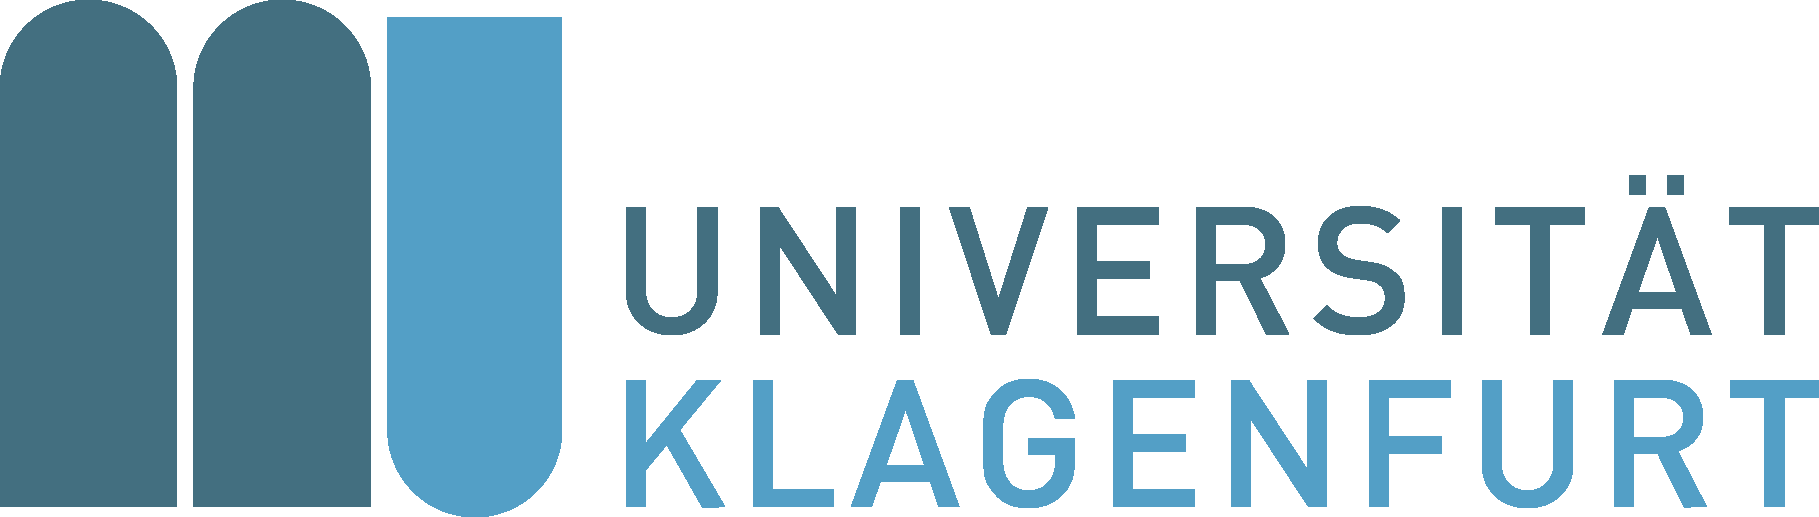 University of Klagenfurt (AAU)